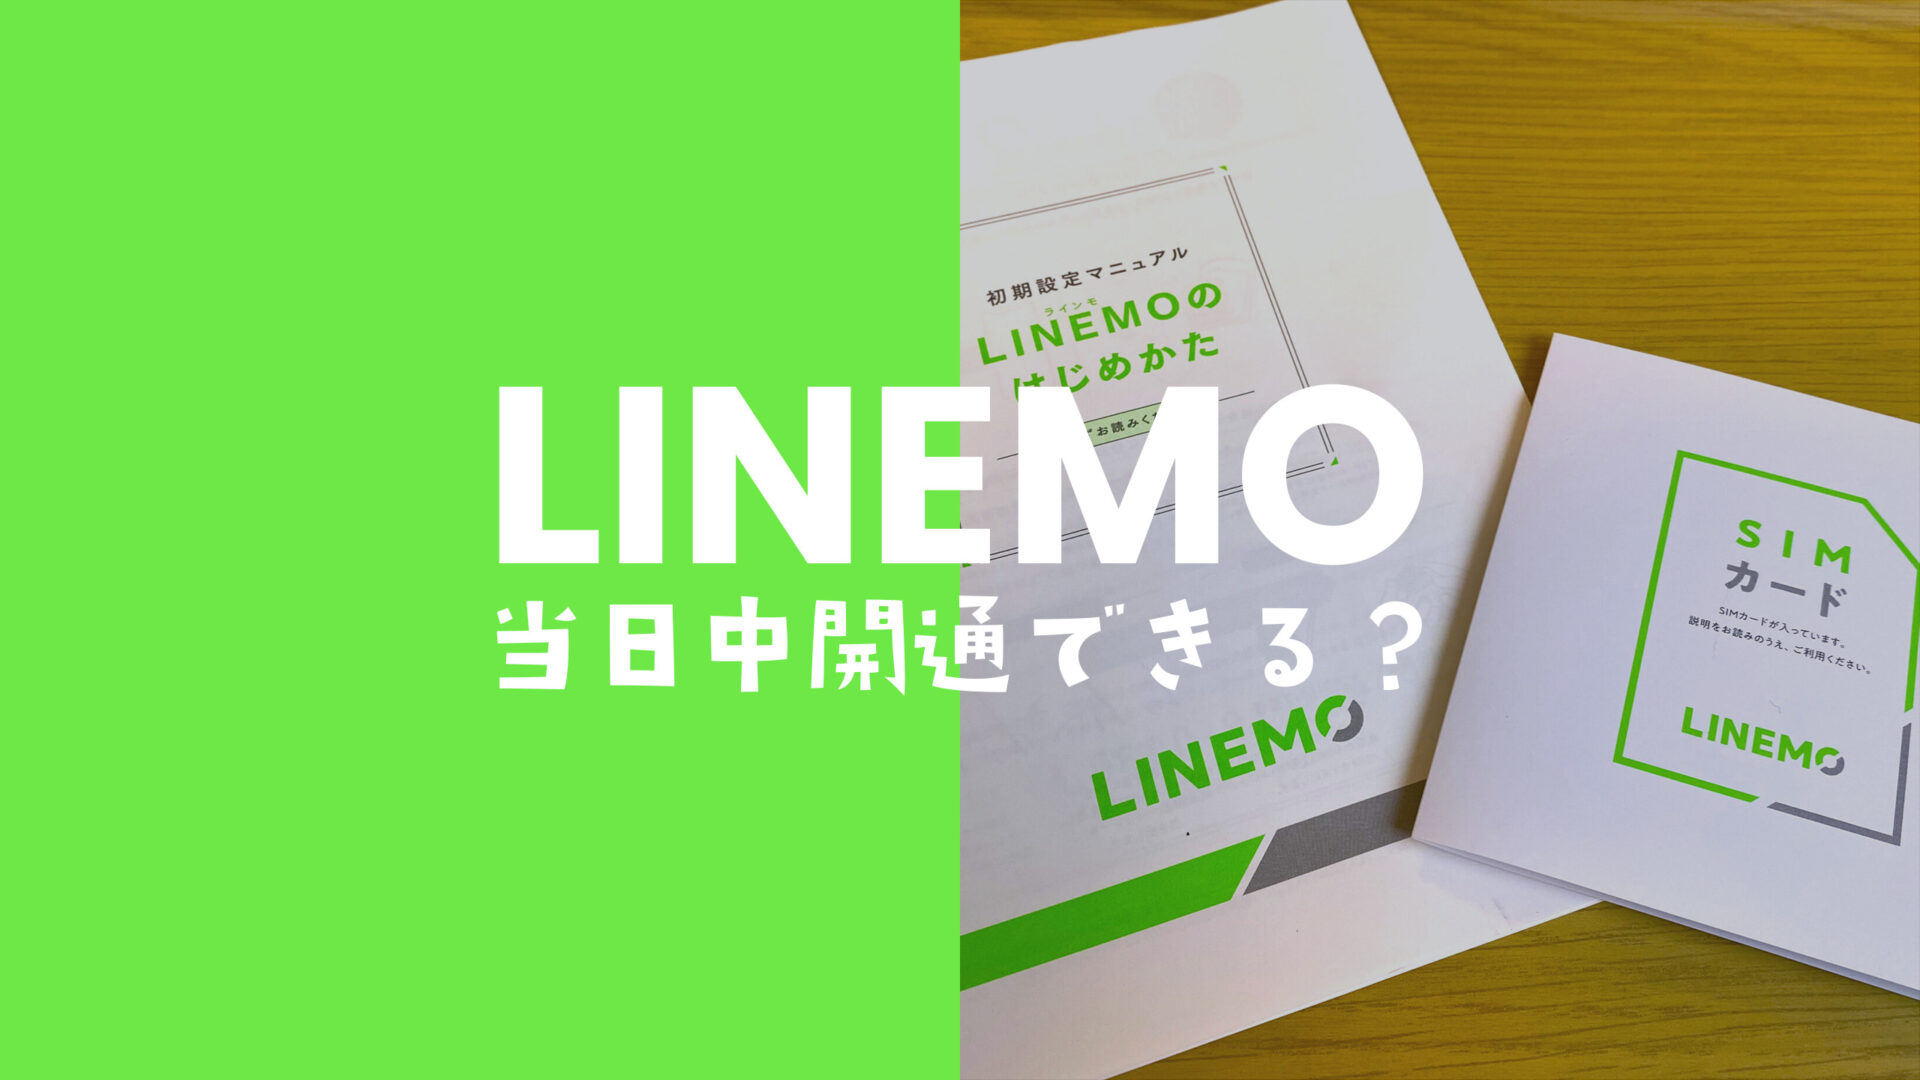 LINEMO(ラインモ)は即日開通できる場合も。eSIMでMNP申込を筆者が検証。のサムネイル画像